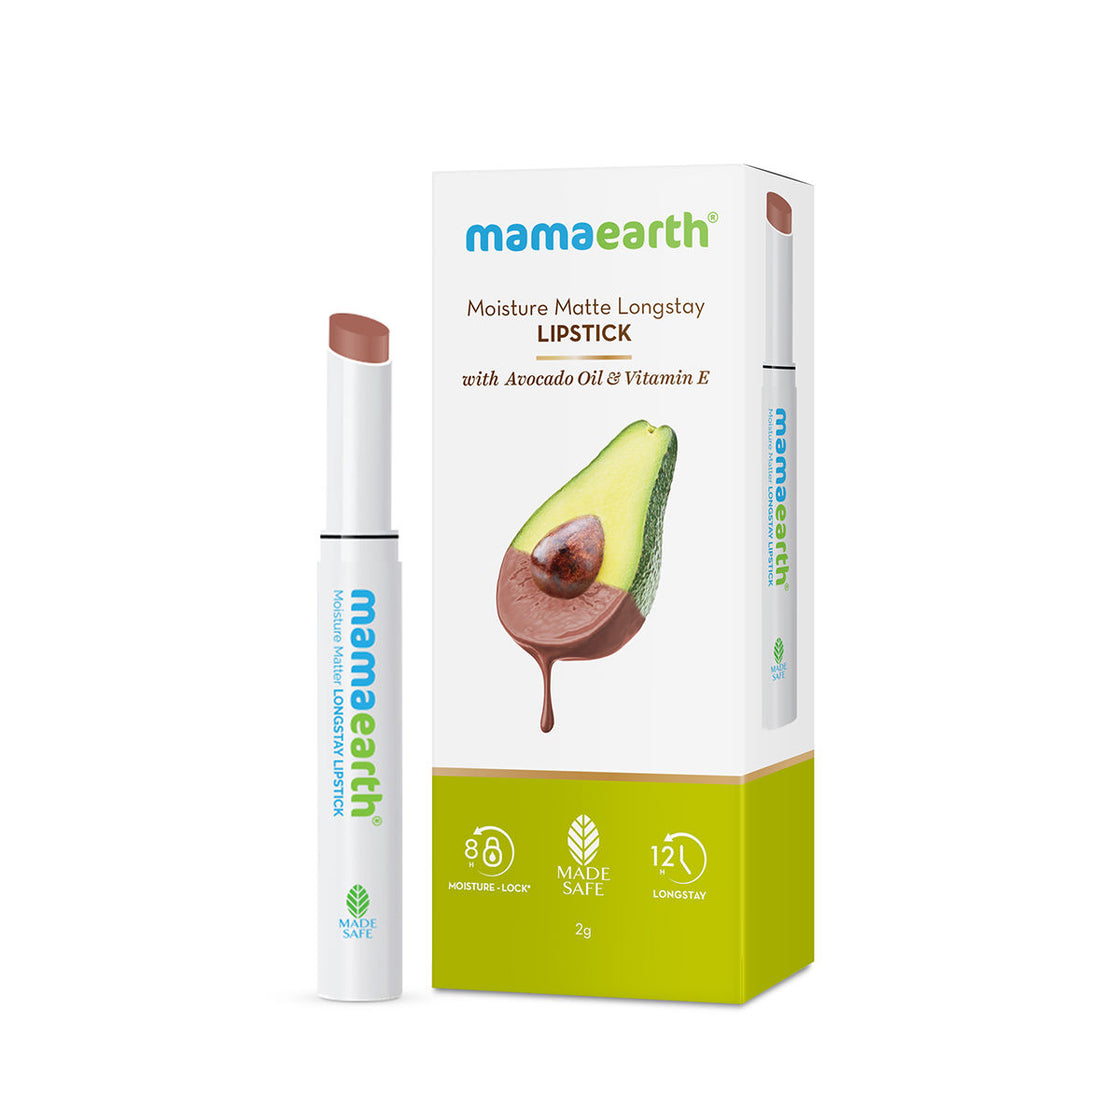 Mamaearth Moisture Matte Longstay Lipstick With Avocado Oil & Vitamin E-6